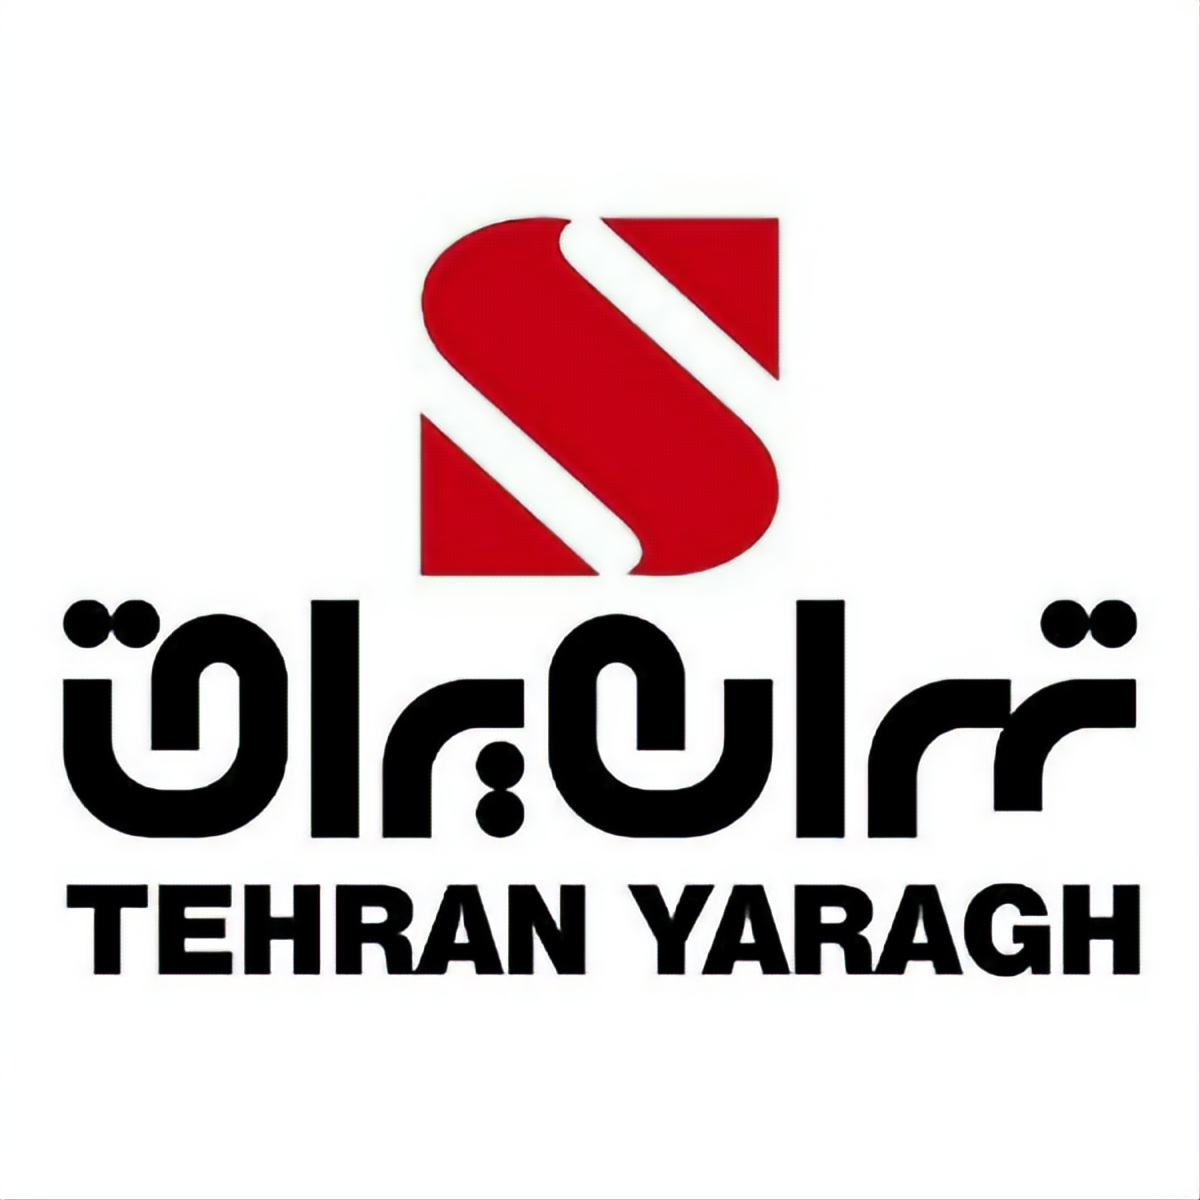 تهران یراق - TEHRAN YARAGH